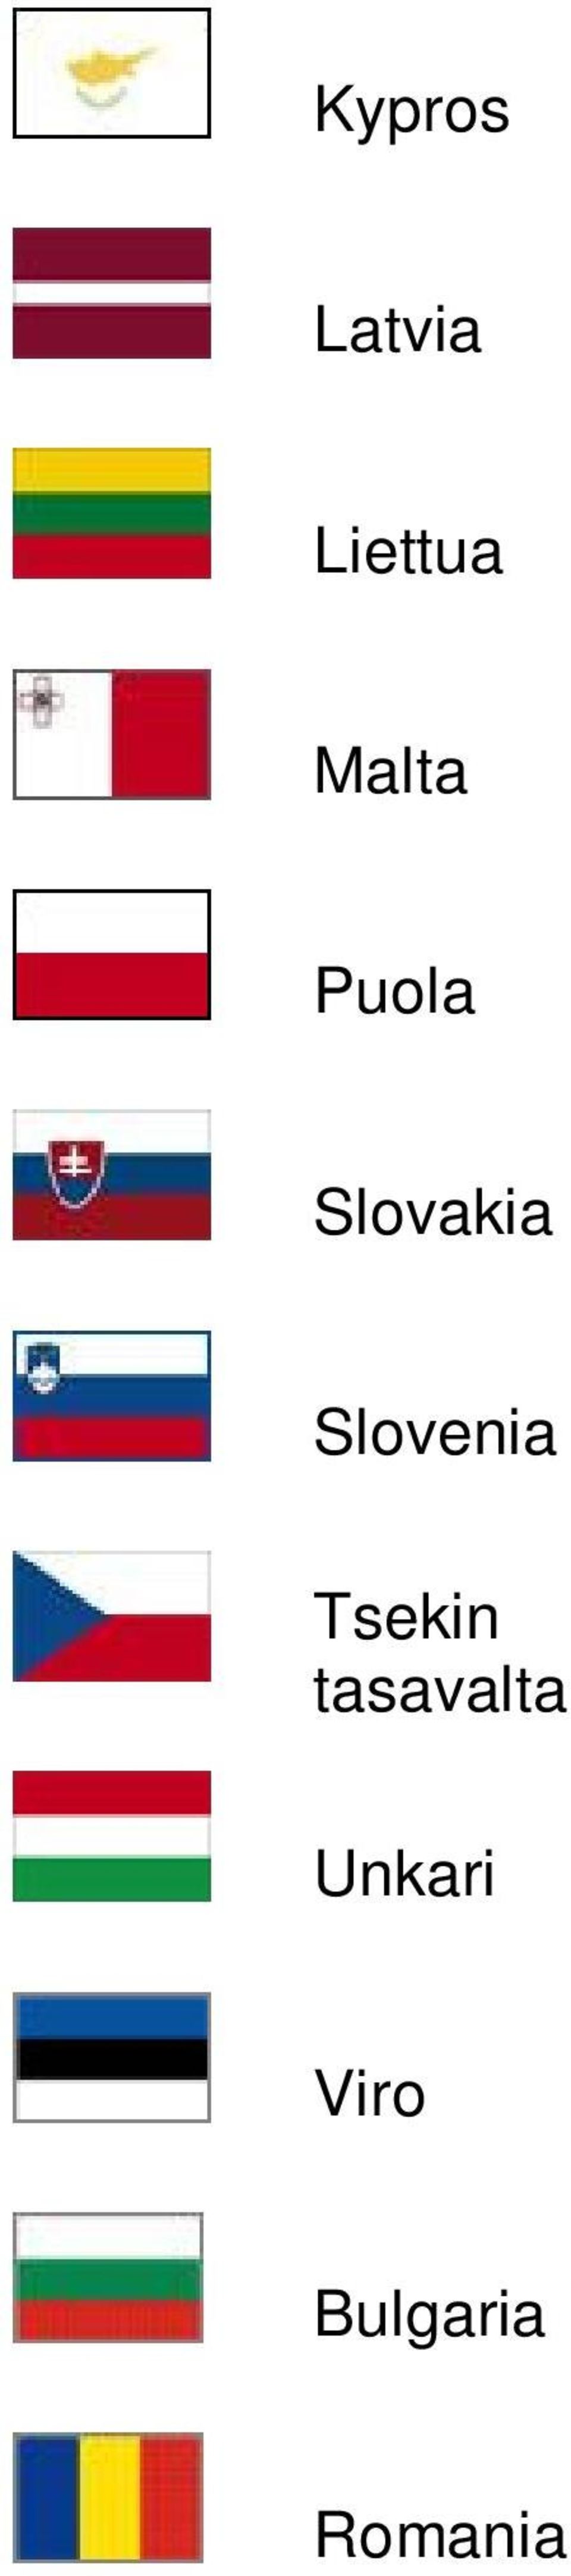 Slovenia Tsekin